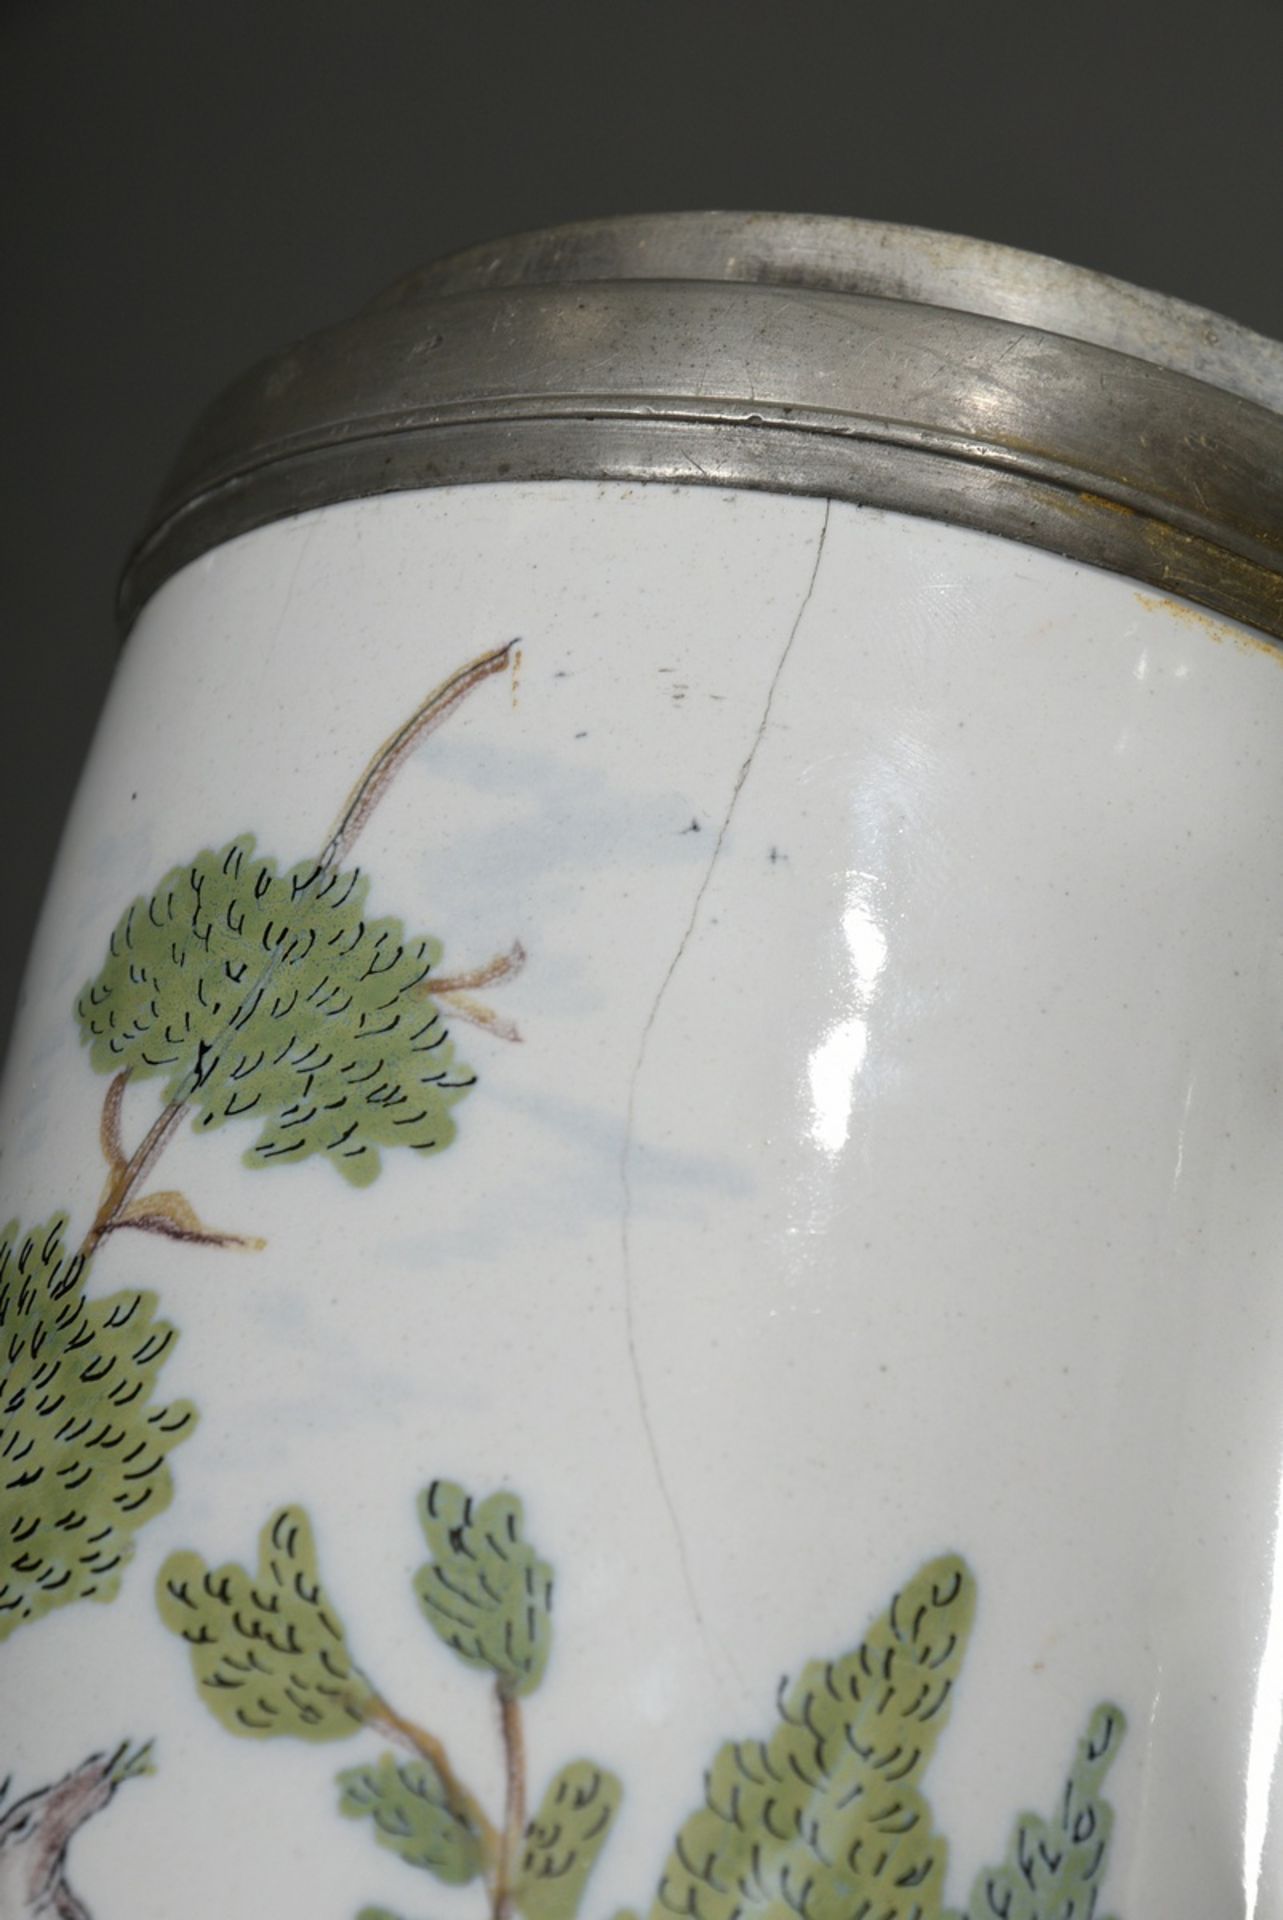 Schrezheimer Walzenkrug in Zylinderform mit Ohrenhenkel, Fayence weiß glasiert mit feiner Scharffeu - Bild 8 aus 10